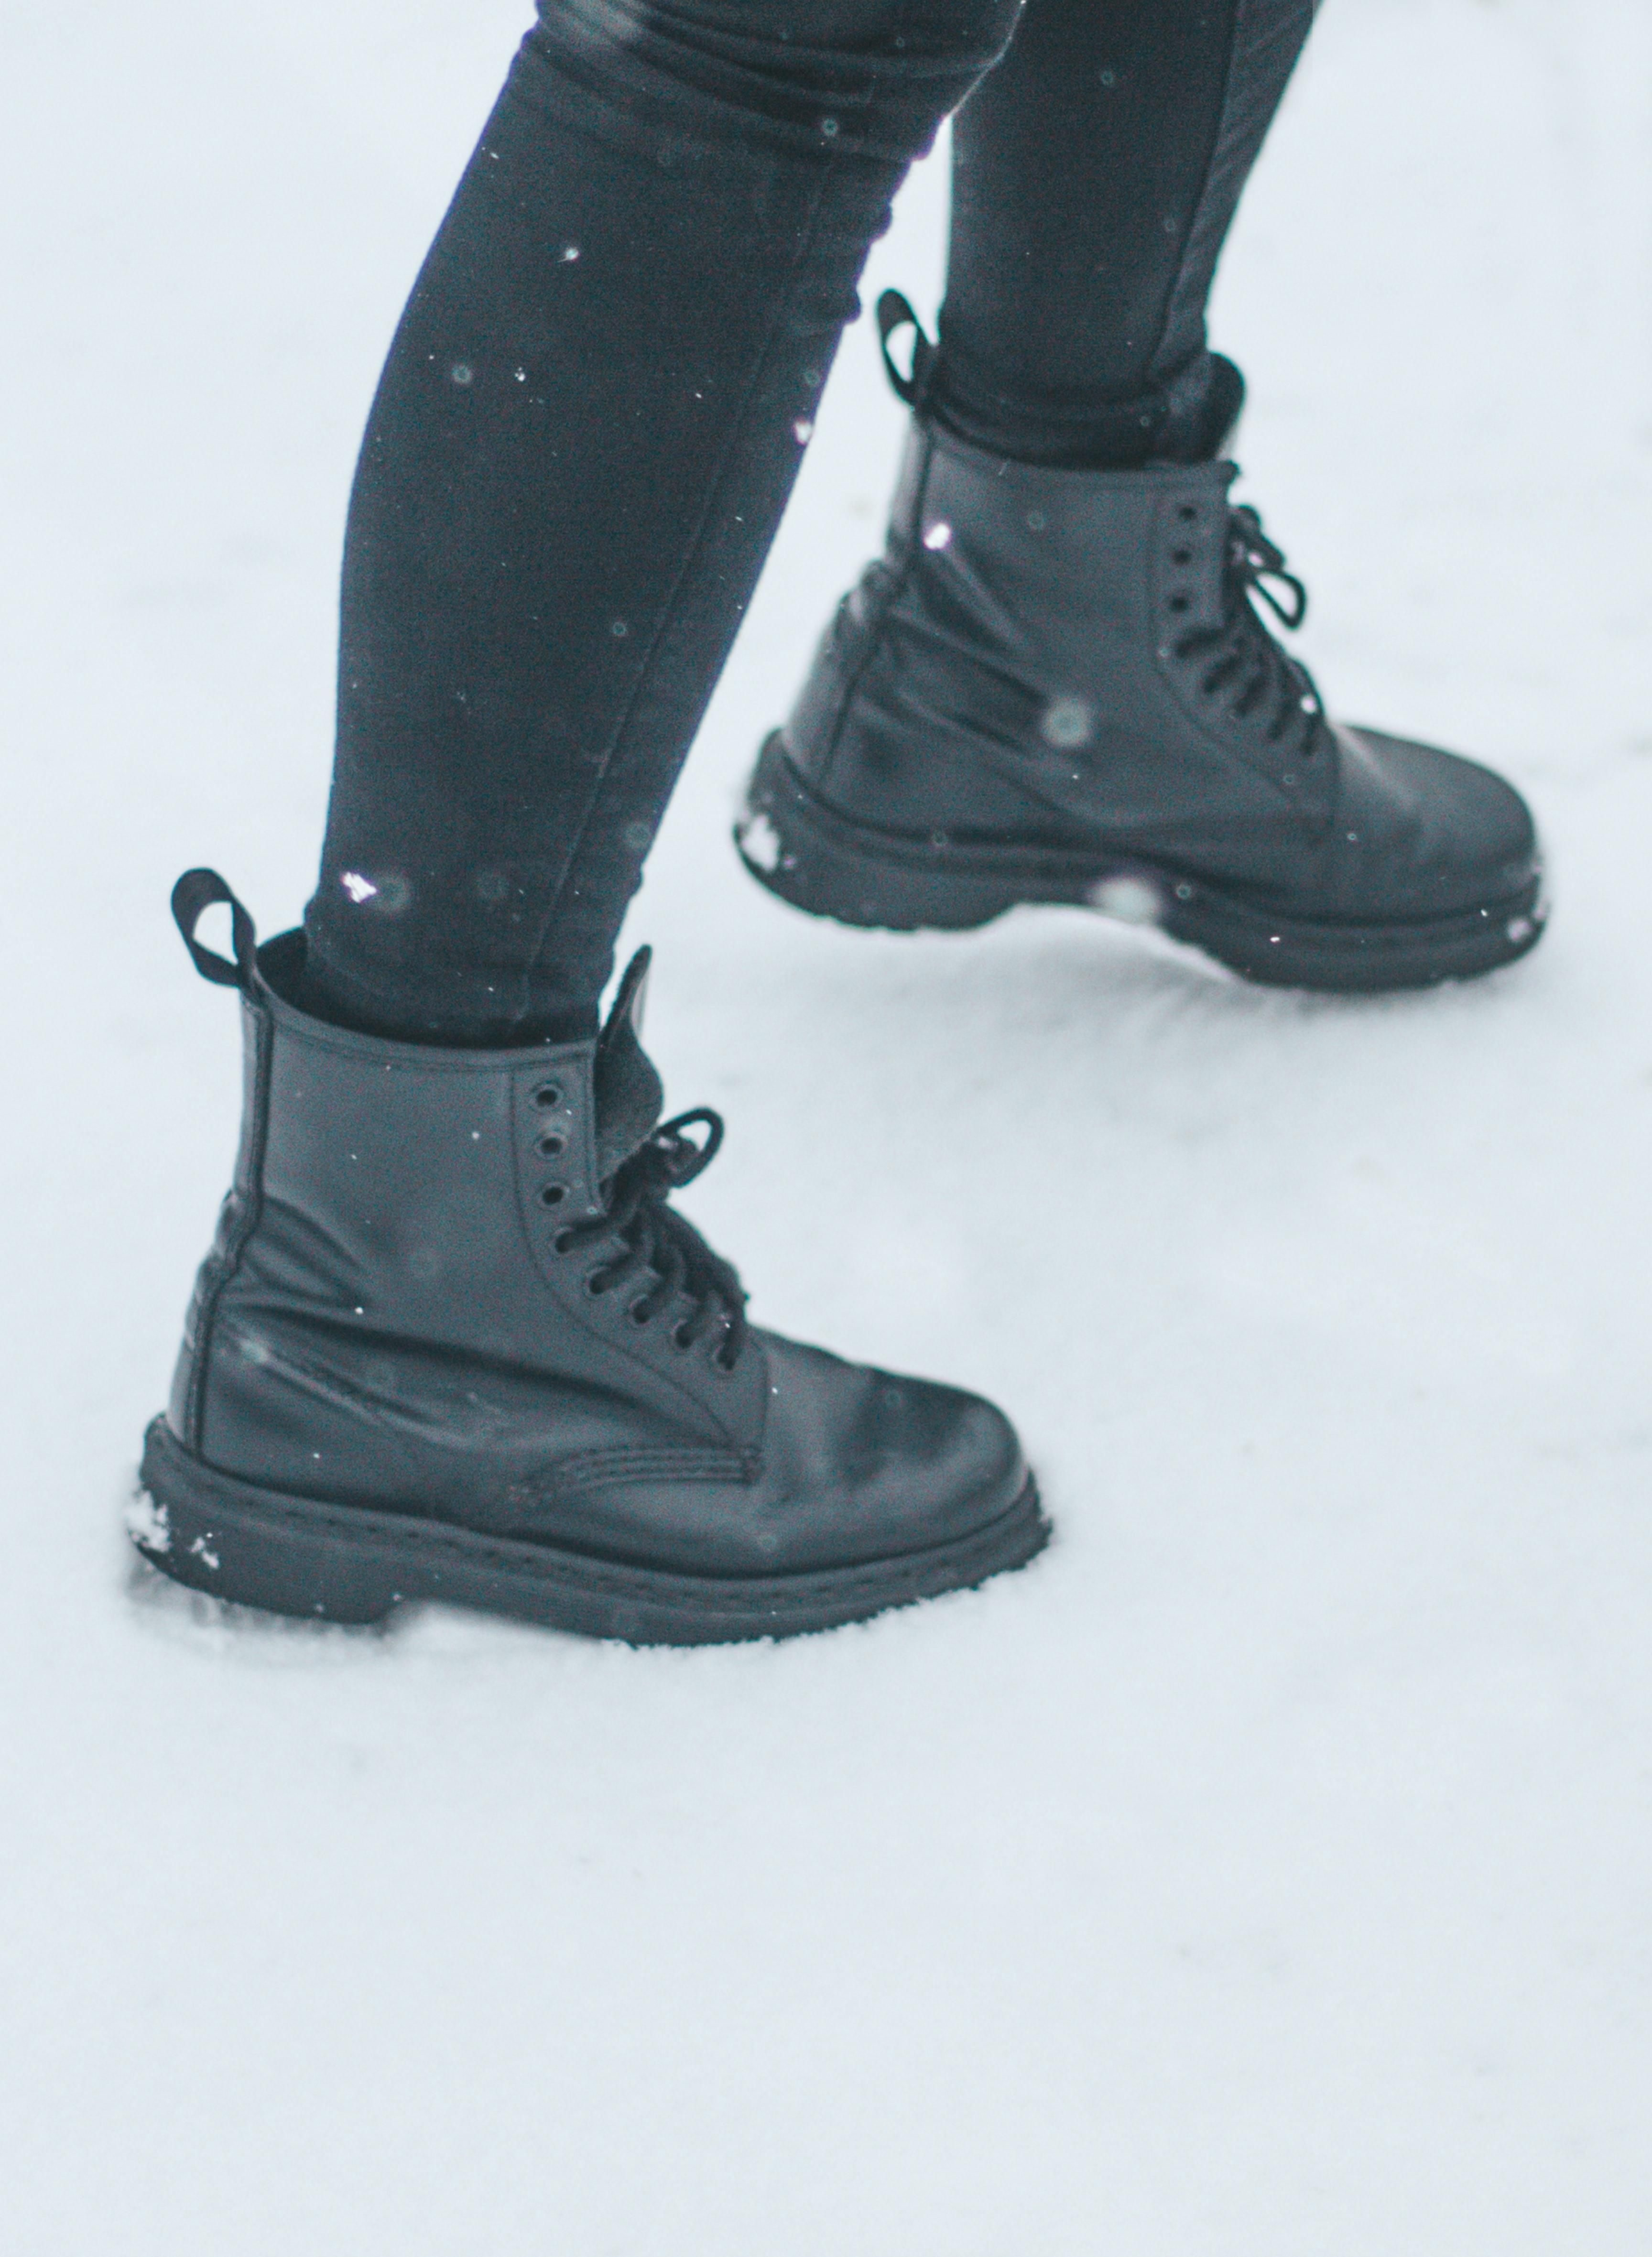 Как правильно ухаживать за обувью зимой: проверенные лайфхаки для сапог из любого материала - Идеи